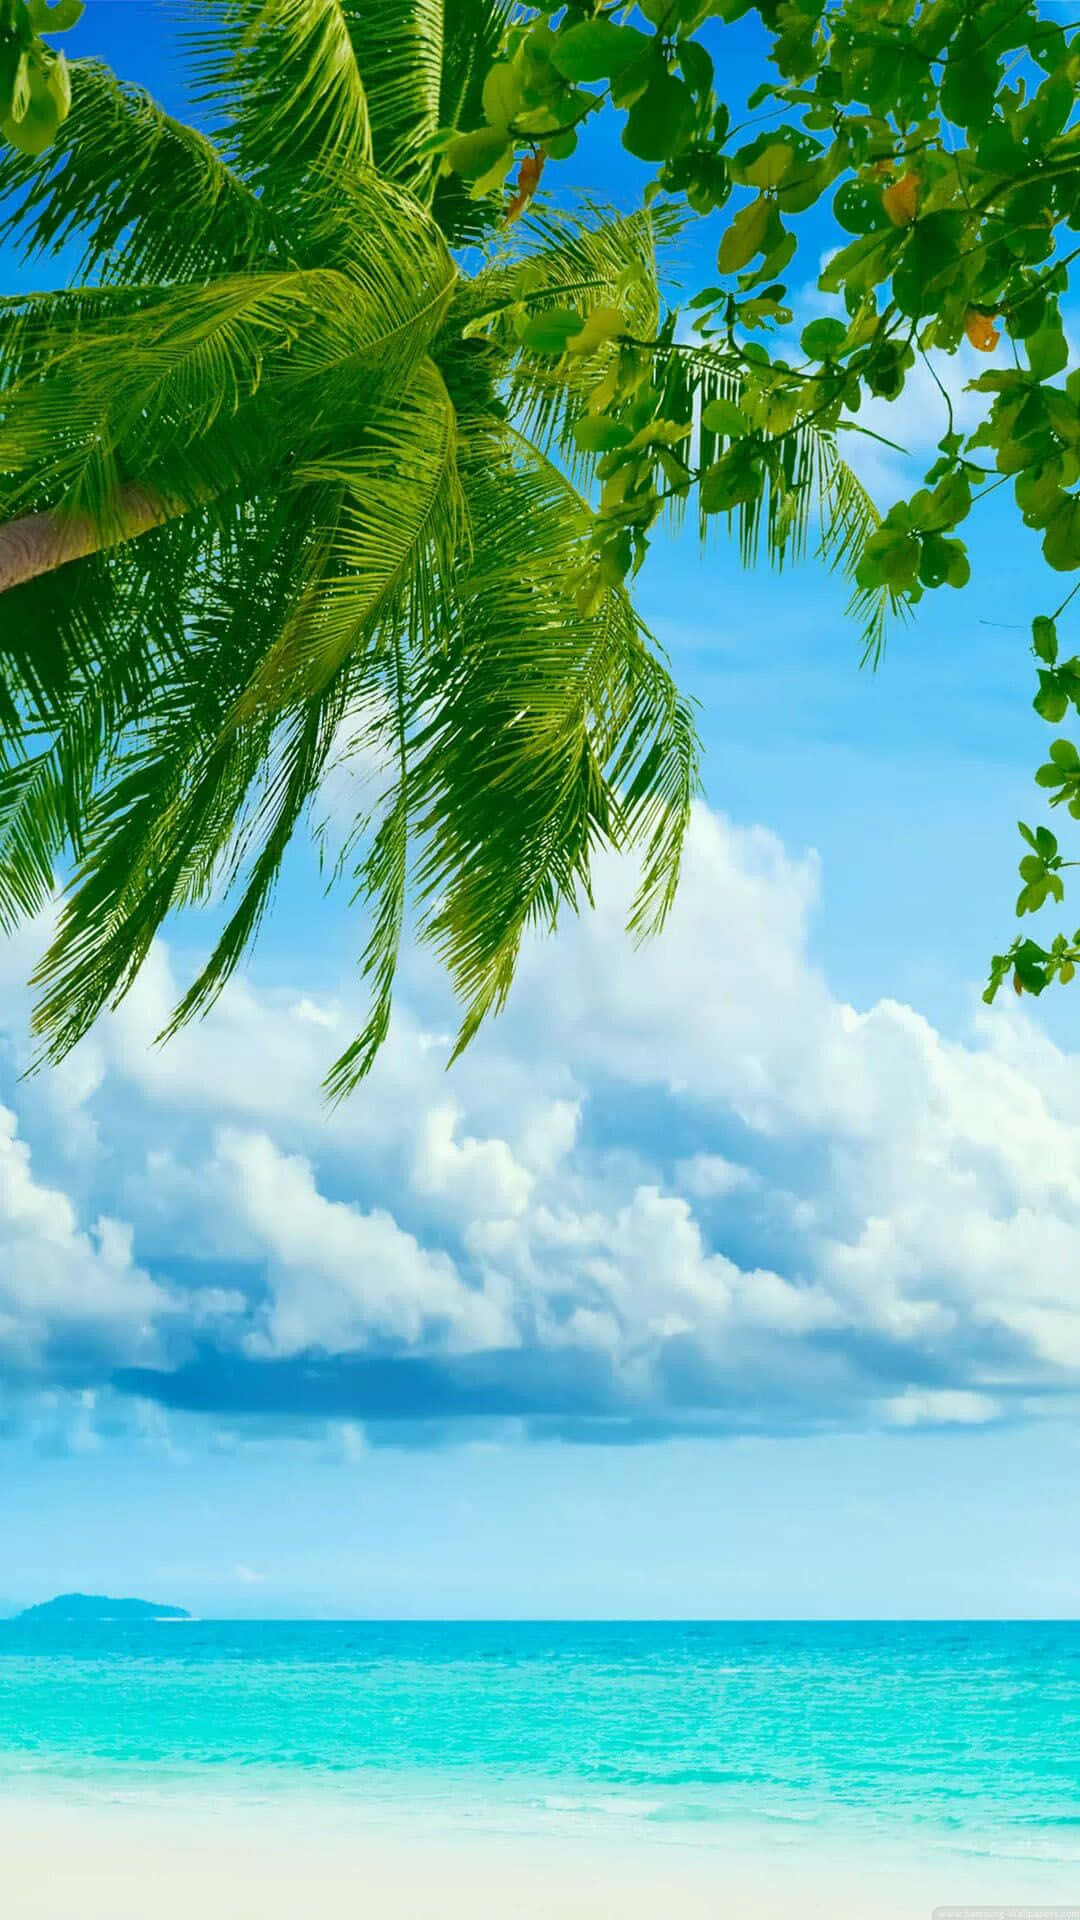 Paradisodi Spiaggia - Schermo Tropicale Per Iphone. Sfondo